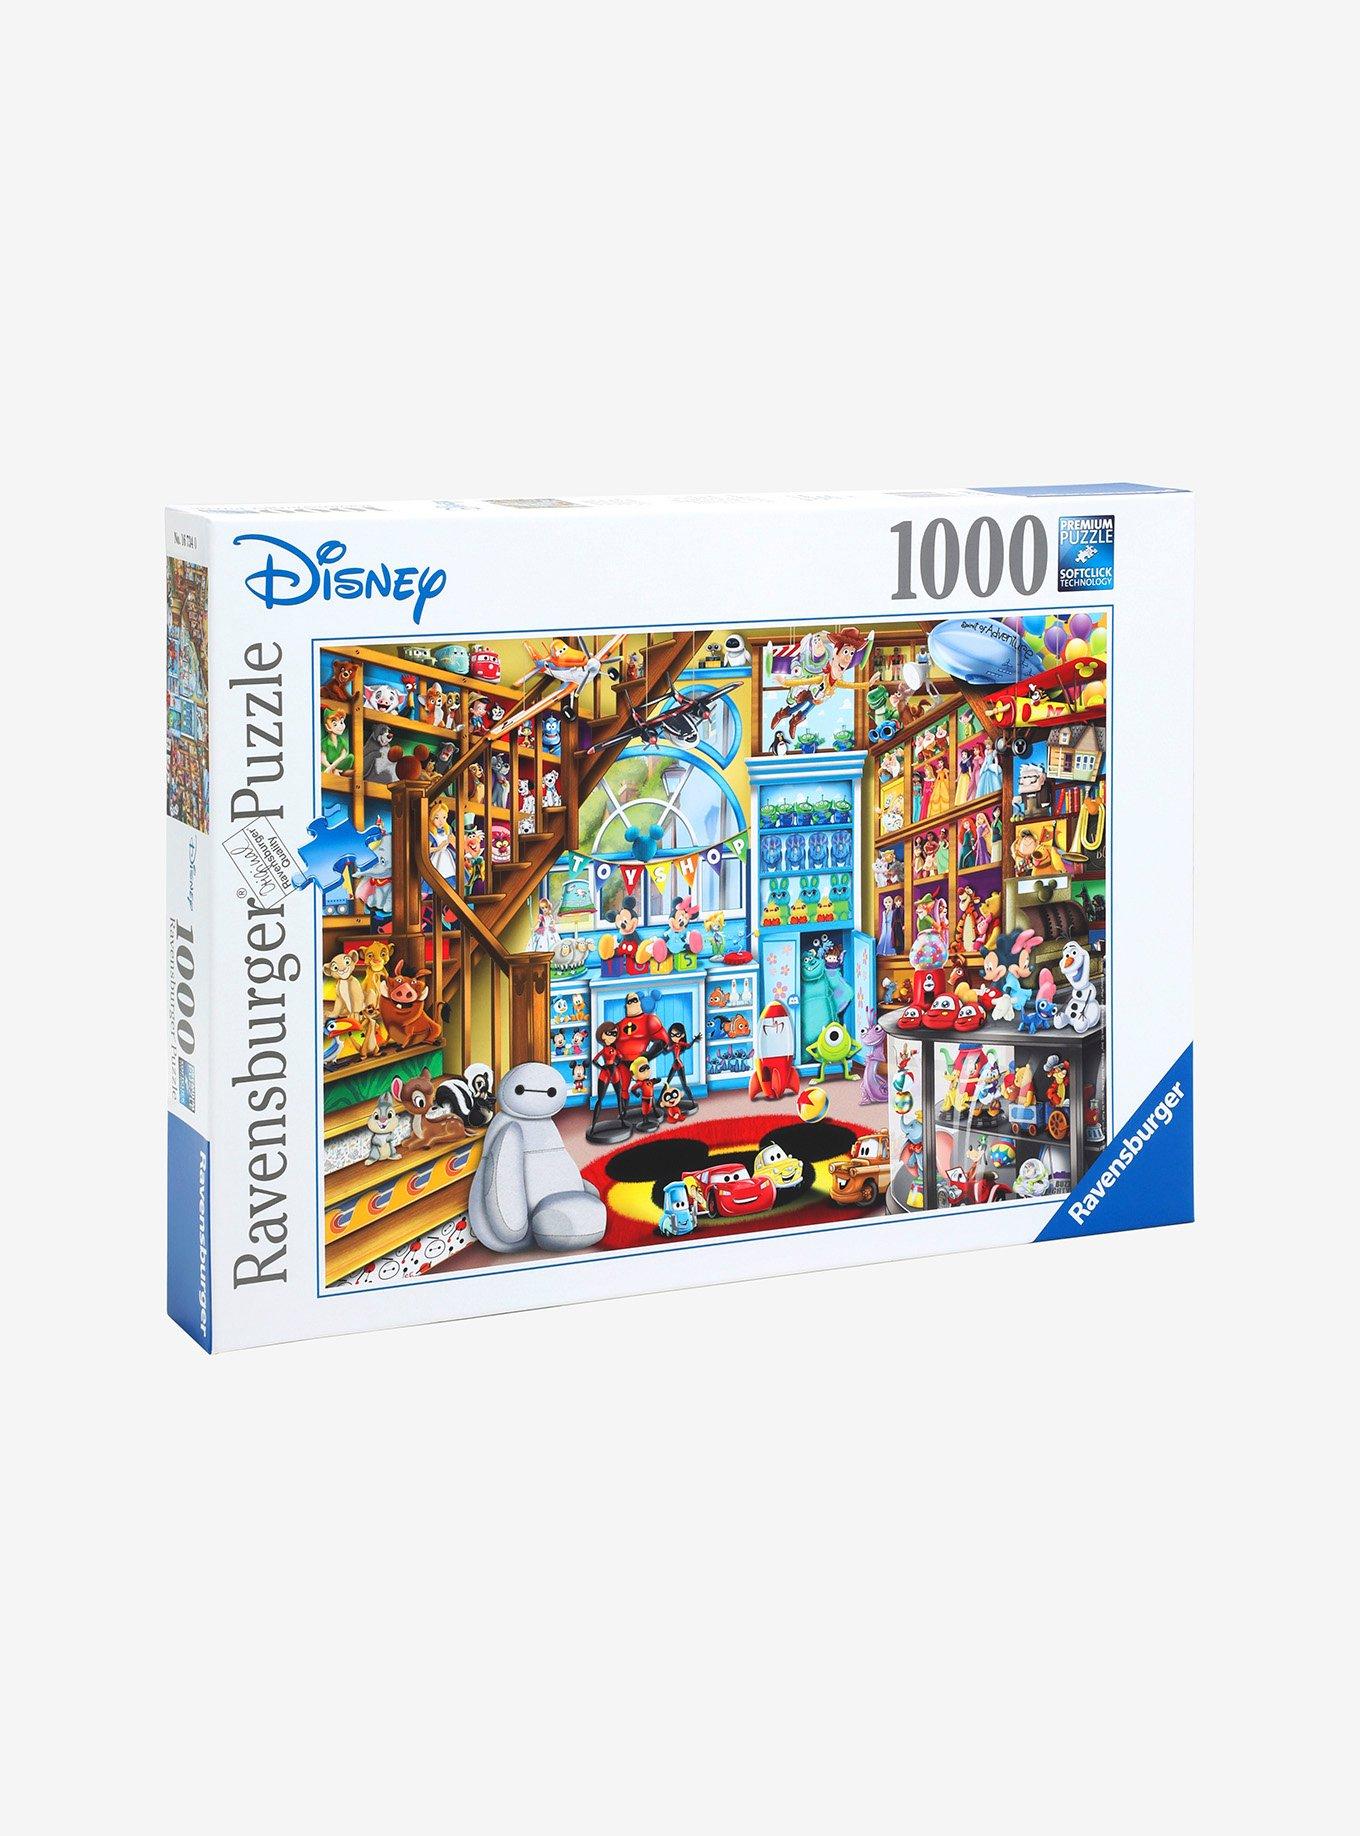 Disney Pixar Toy Store Puzzle